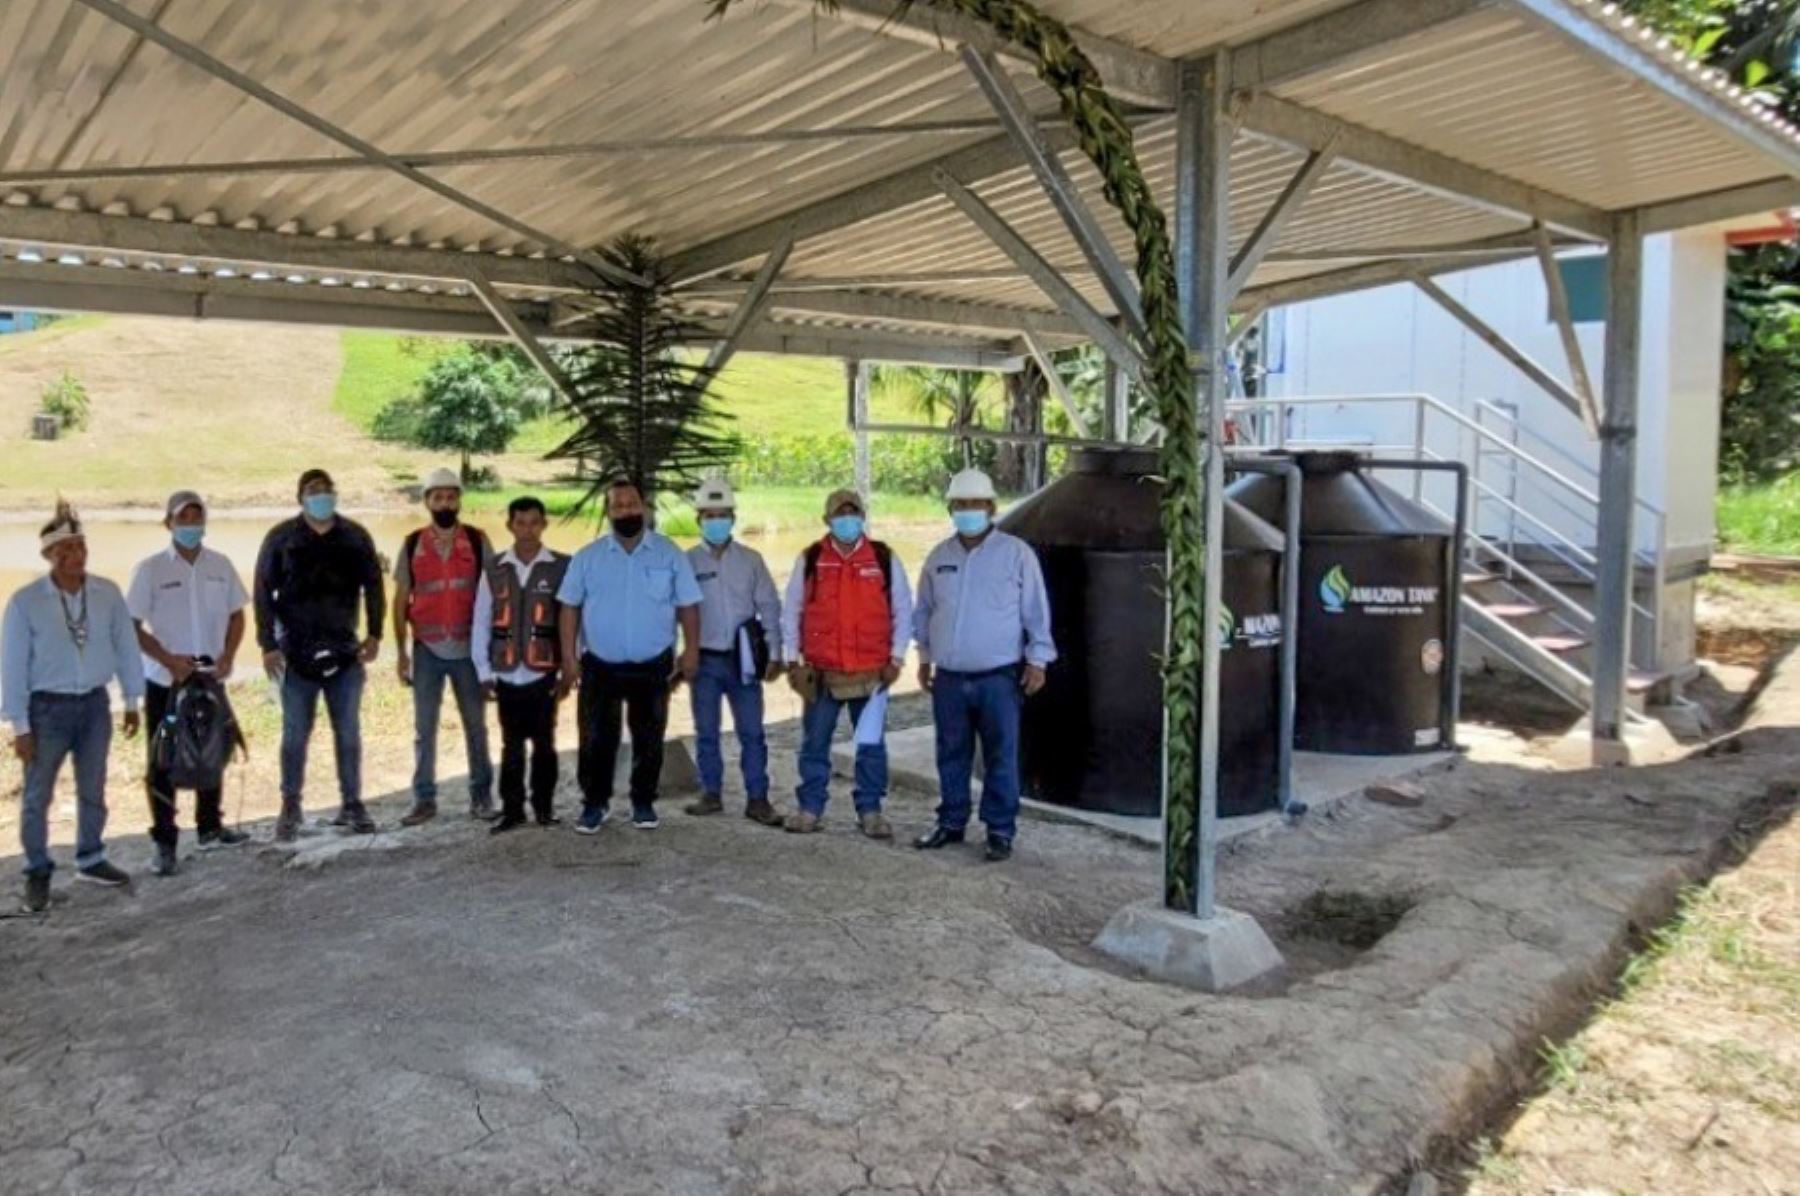 El Ministerio de Vivienda, Construcción y Saneamiento puso en marcha un nuevo proyecto de captación y tratamiento de agua de lluvia en el distrito de Nauta, departamento de Loreto, que beneficia a más de 170 pobladores con servicios de agua potable y saneamiento de calidad.